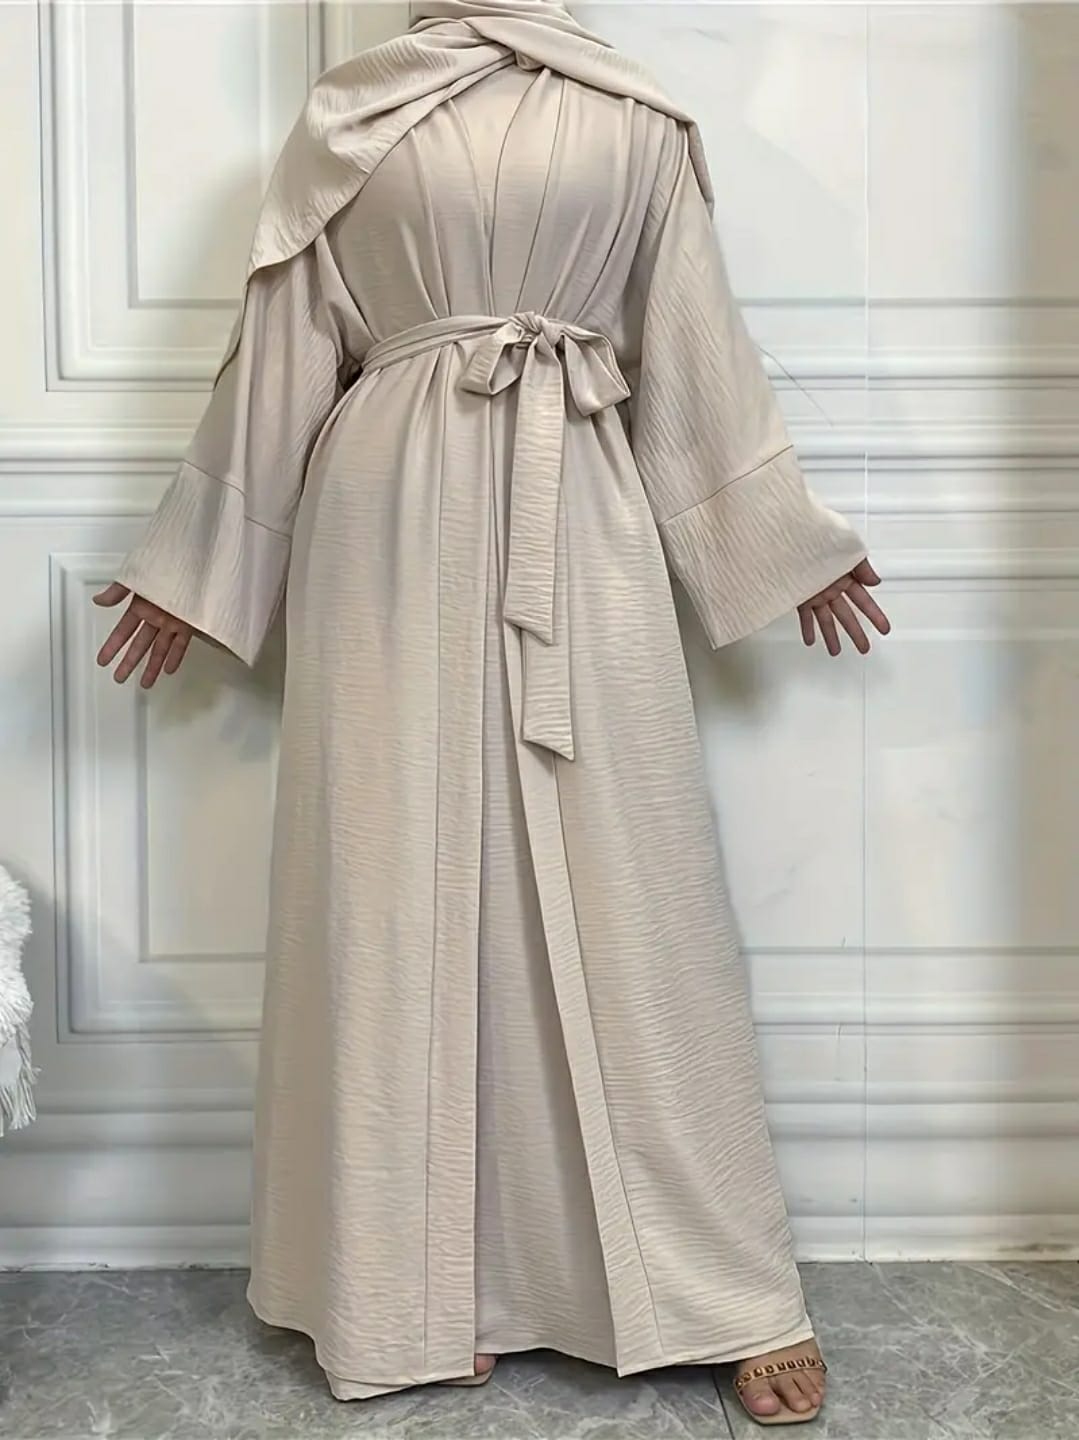 Samaira's Classic Cloak Abaya